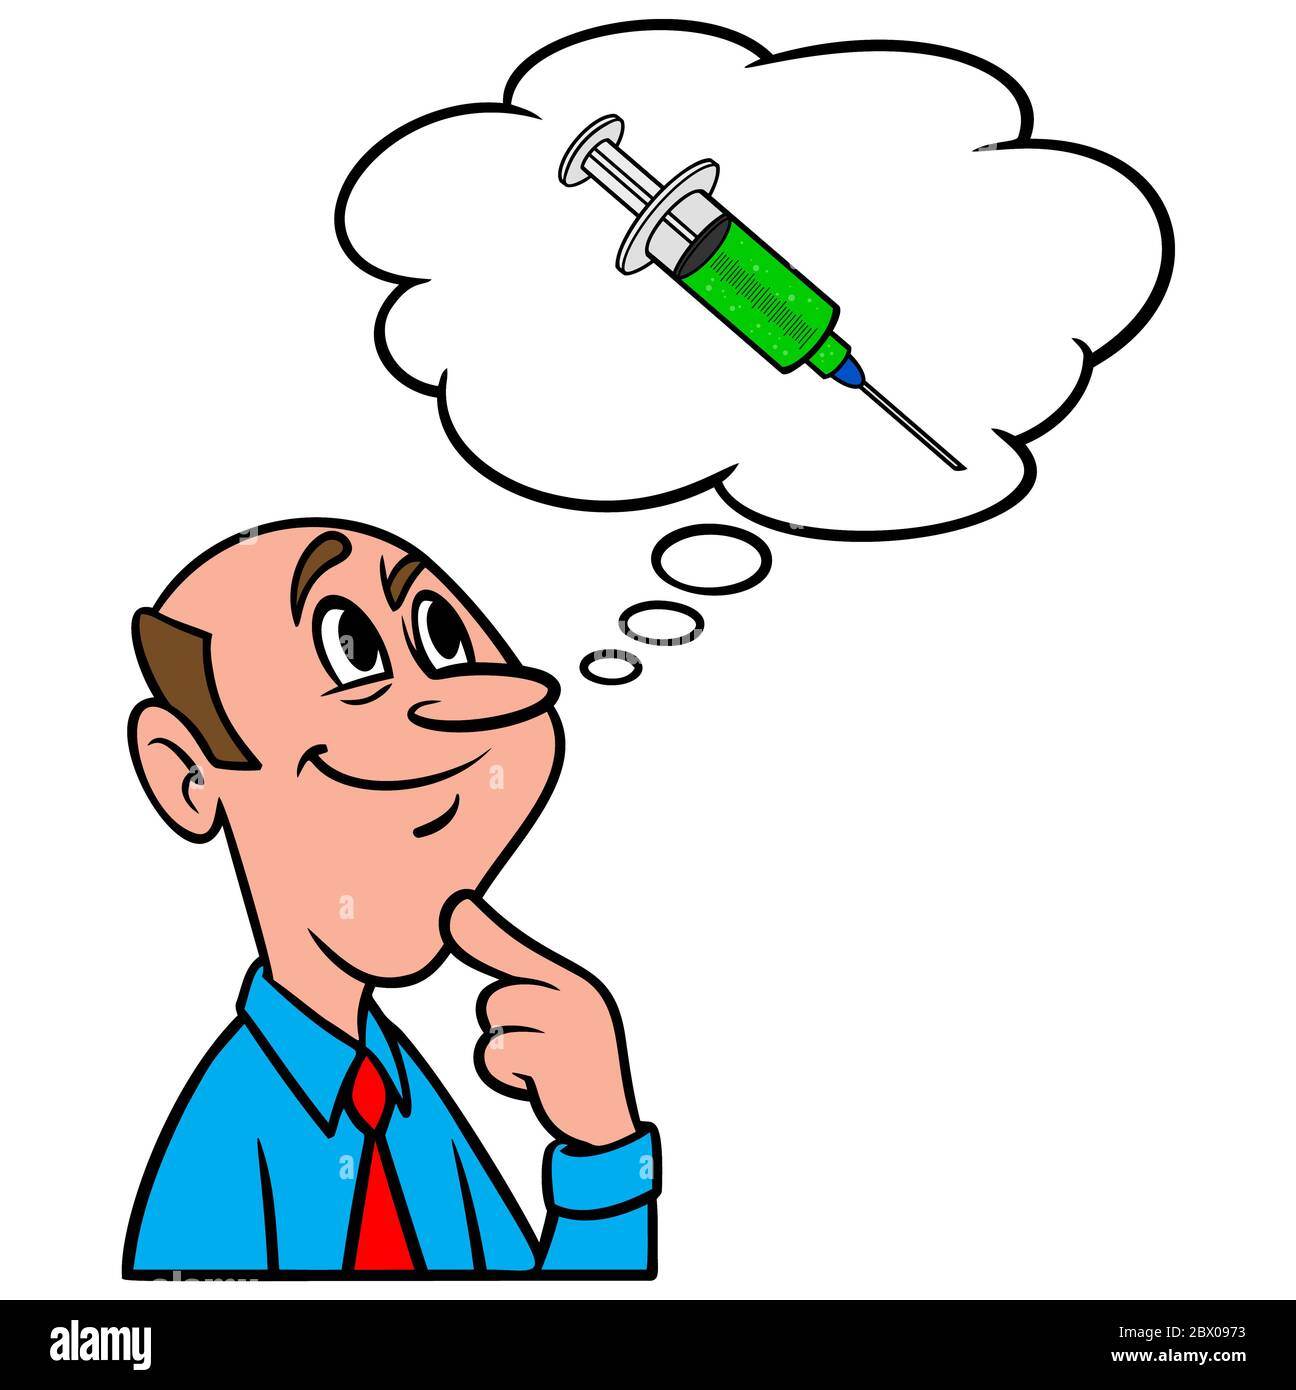 Denken an Grippe-Aufnahme – eine Illustration einer Person, die an eine Grippe-Aufnahme denkt. Stock Vektor